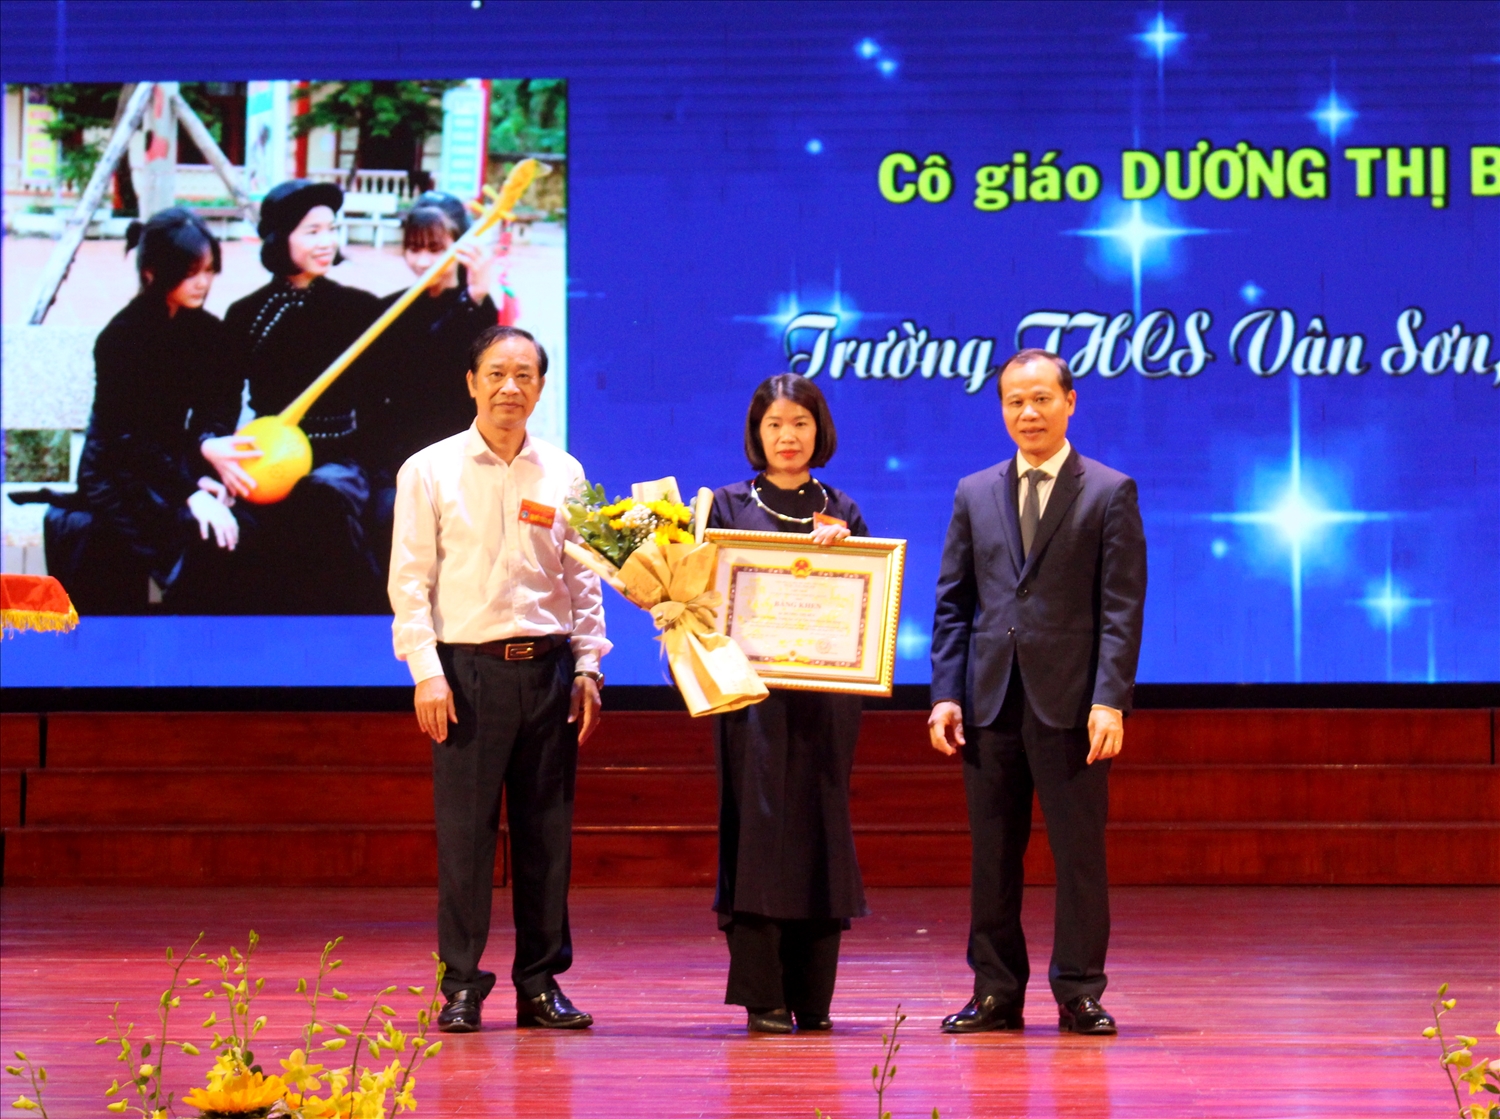 Cô giáo Dương Thị Bền được Chủ tịch UBND tỉnh Bắc Giang tặng Bằng khen tại Hội nghị biểu dương tôn vinh các điển hình tiên tiến trong vùng đồng bào dân tộc thiểu số và miền núi tỉnh Bắc Giang lần thứ nhất năm 2023